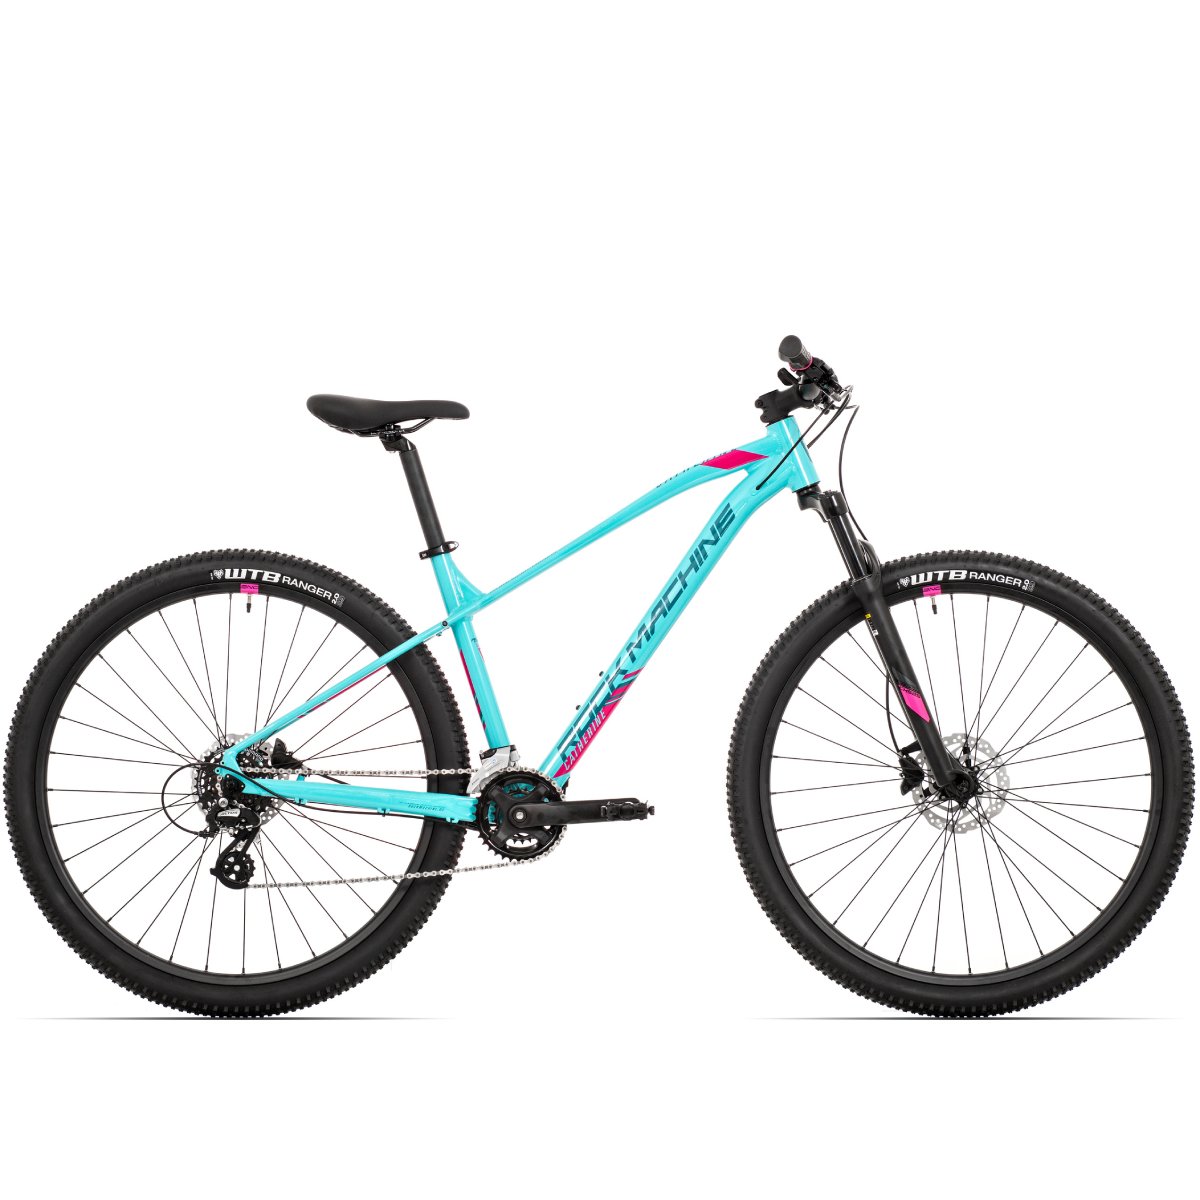 Kalnų dviratis Rock Machine 29 Catherine 10-29 šviesiai mėlynas/rožinis (L) - 1